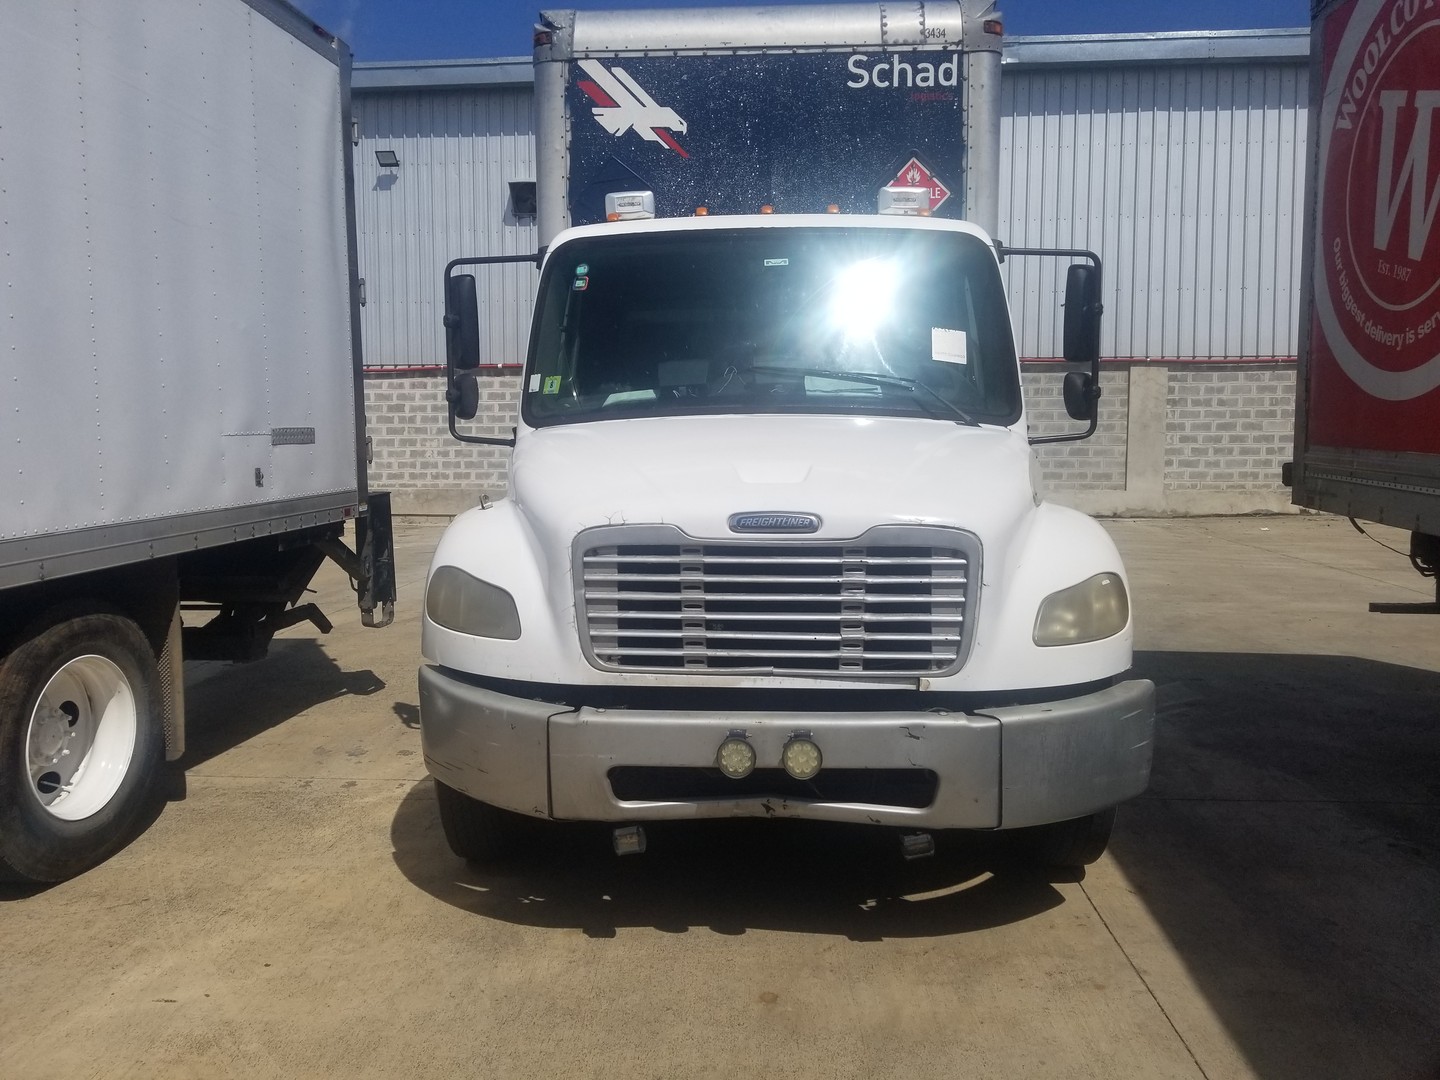 camiones y vehiculos pesados - Vendo camión Freigthliner en perfecto estado.